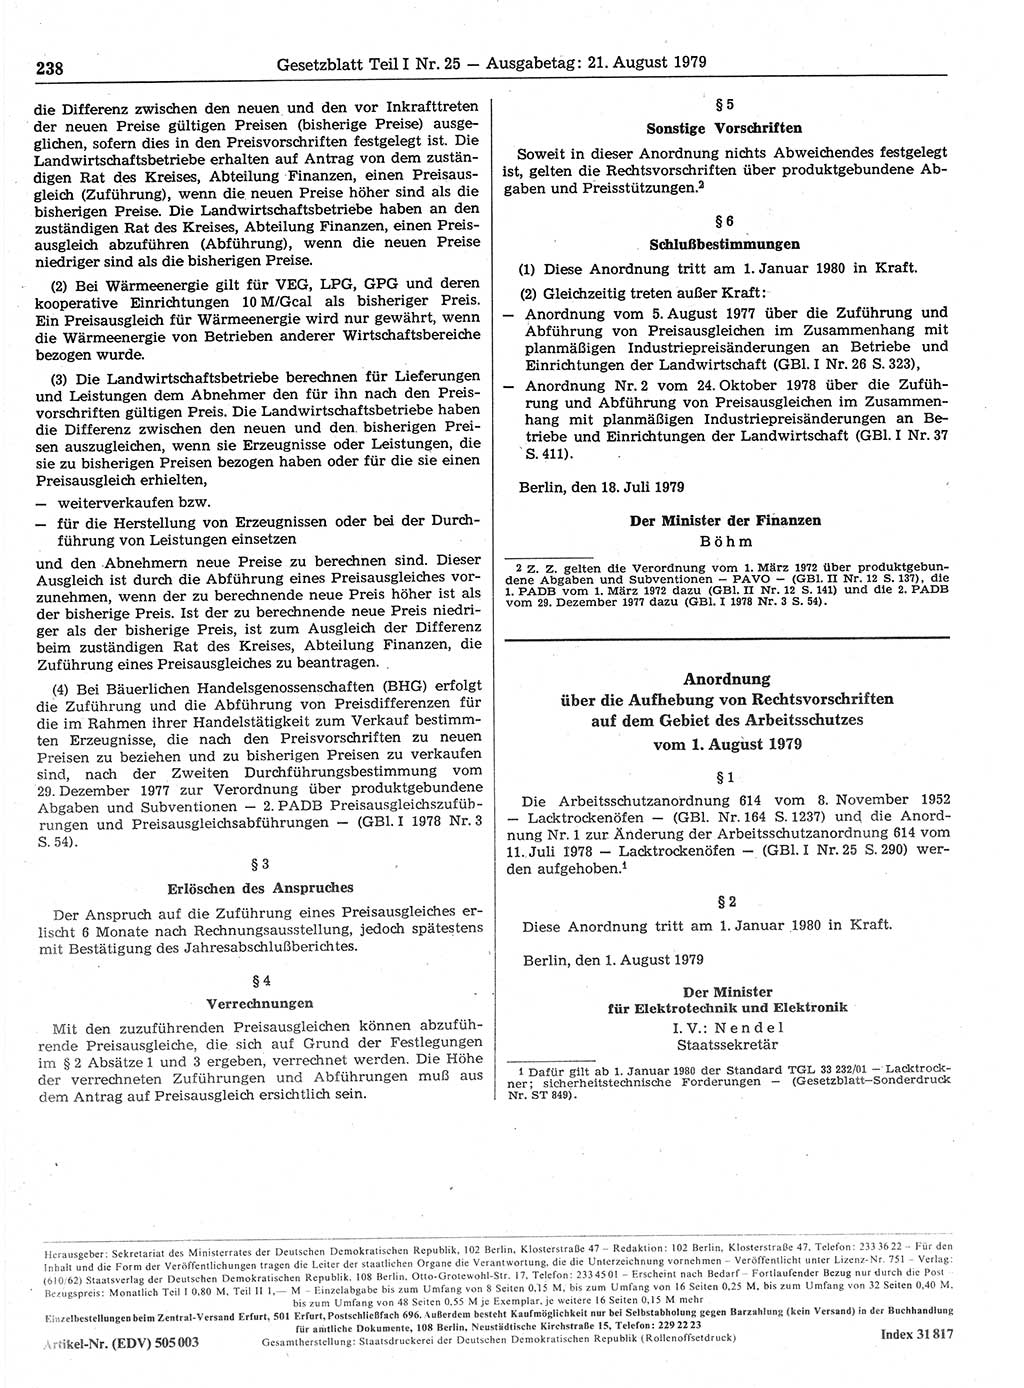 Gesetzblatt (GBl.) der Deutschen Demokratischen Republik (DDR) Teil Ⅰ 1979, Seite 238 (GBl. DDR Ⅰ 1979, S. 238)